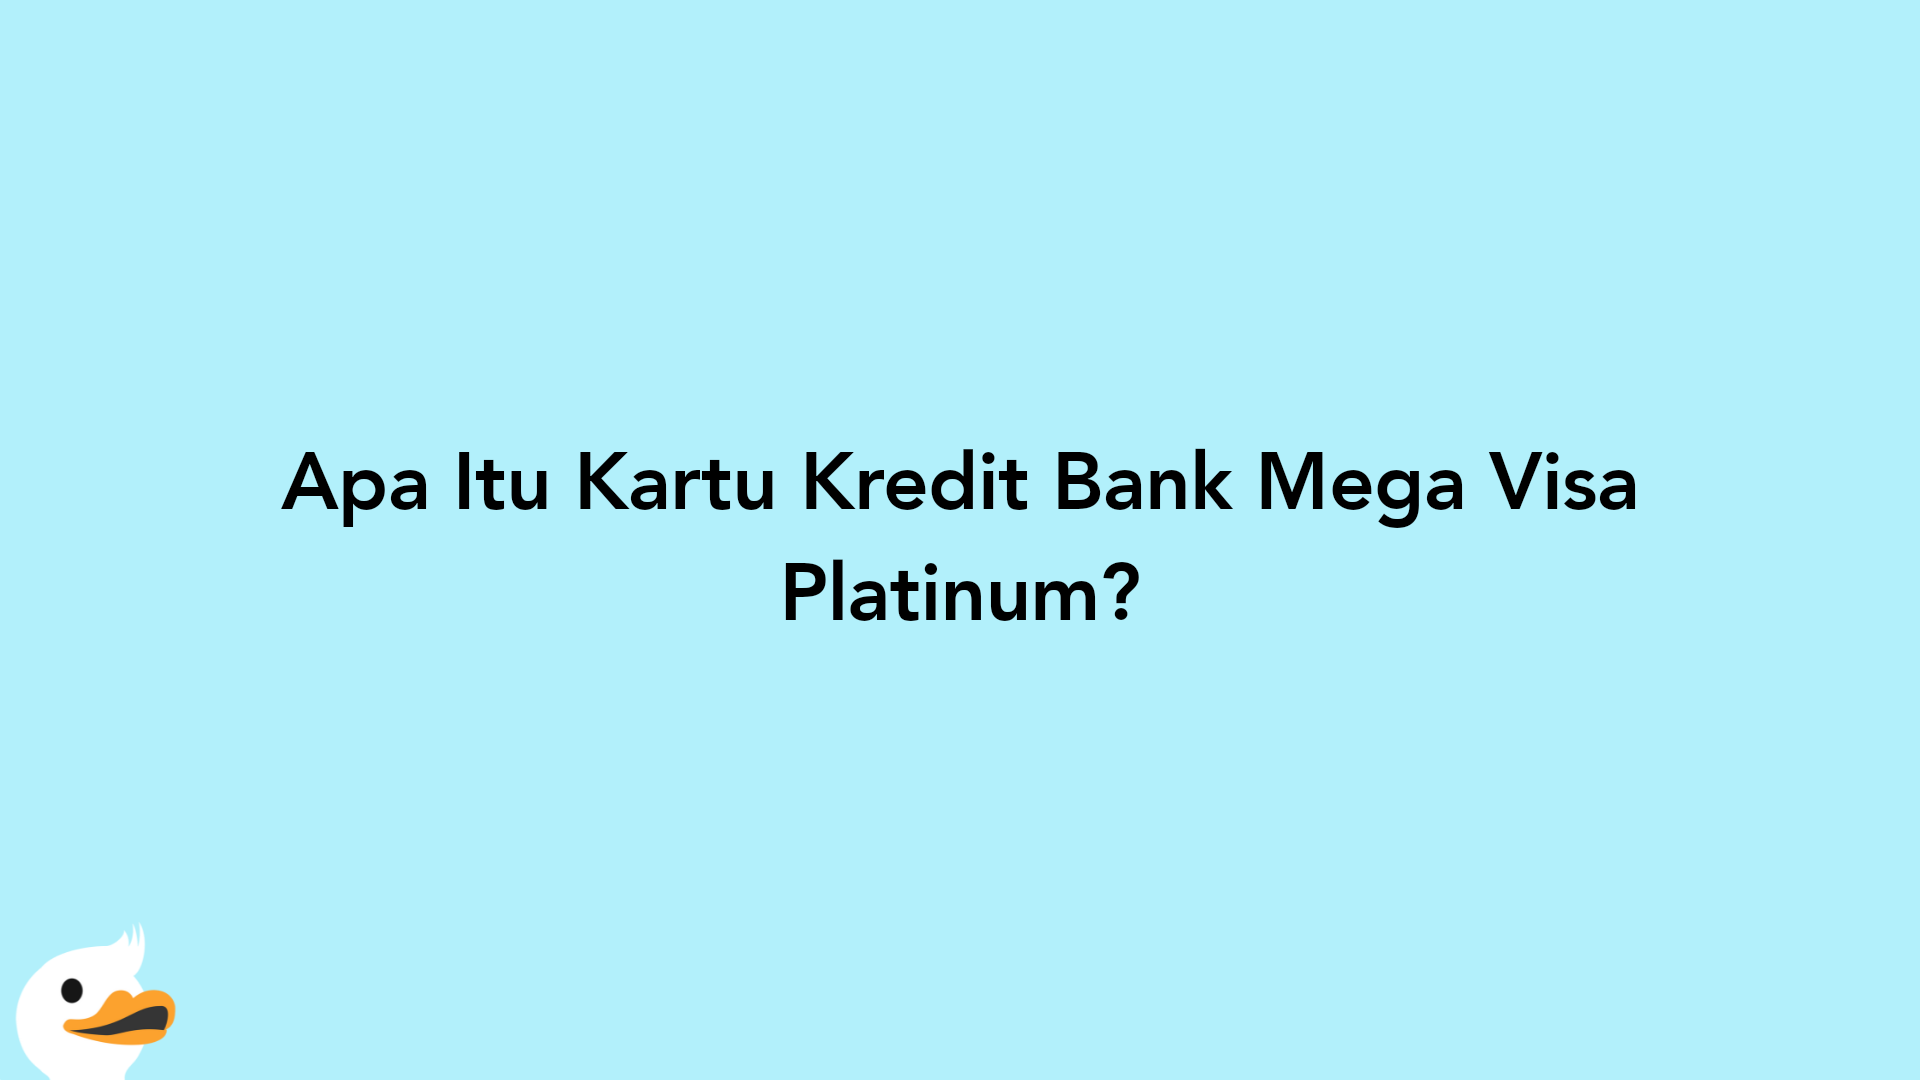 Apa Itu Kartu Kredit Bank Mega Visa Platinum?